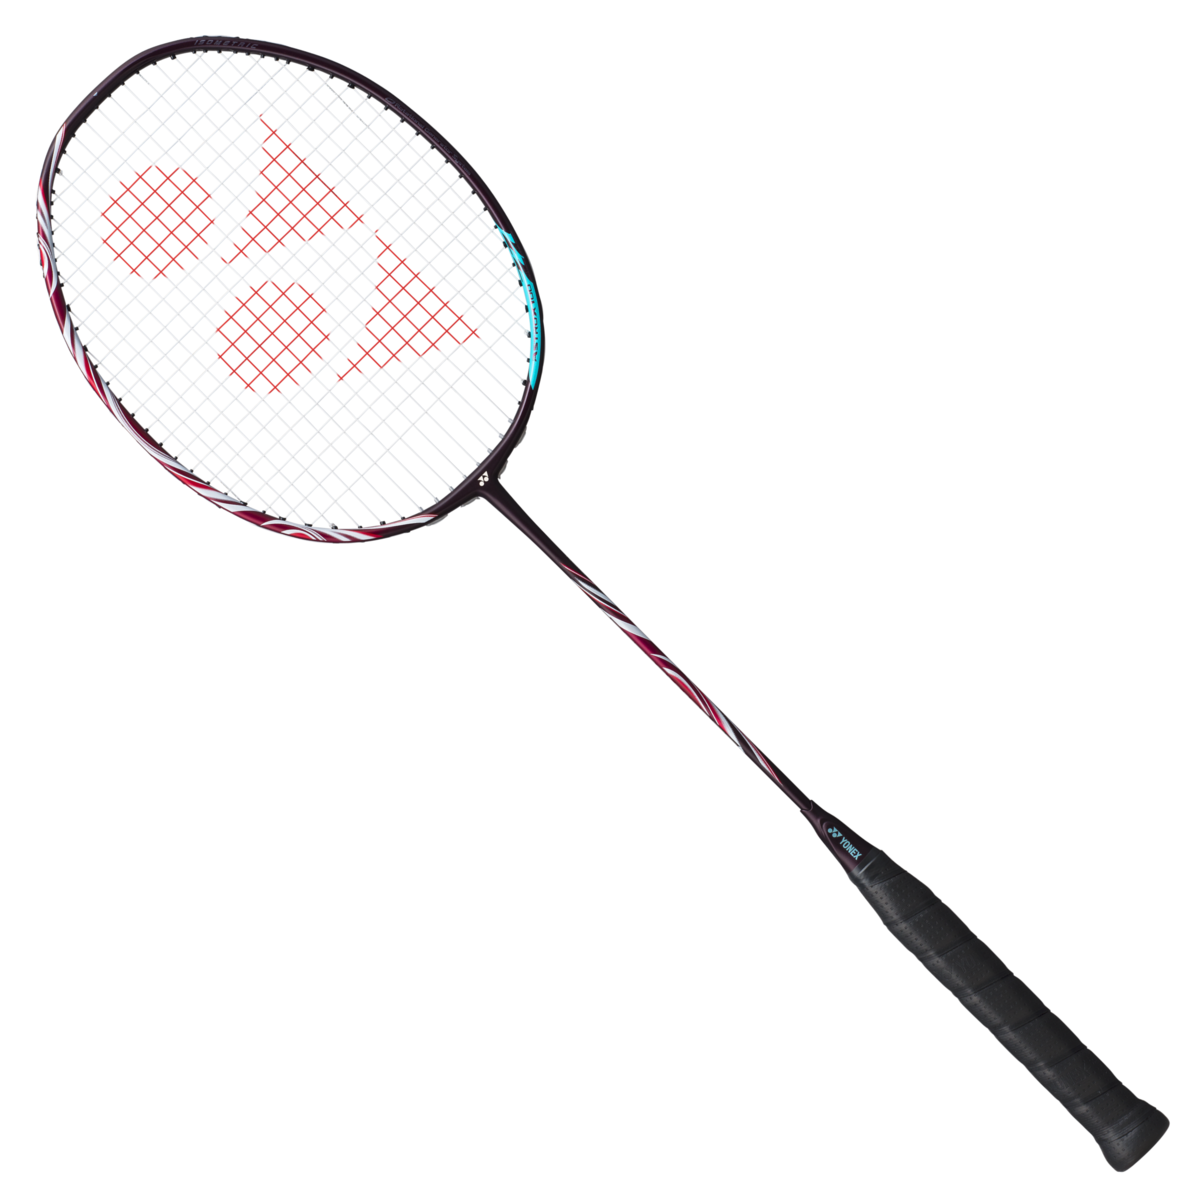 Yonex Astrox 100 ZZ Viktor Axelsen's Badminton Racket